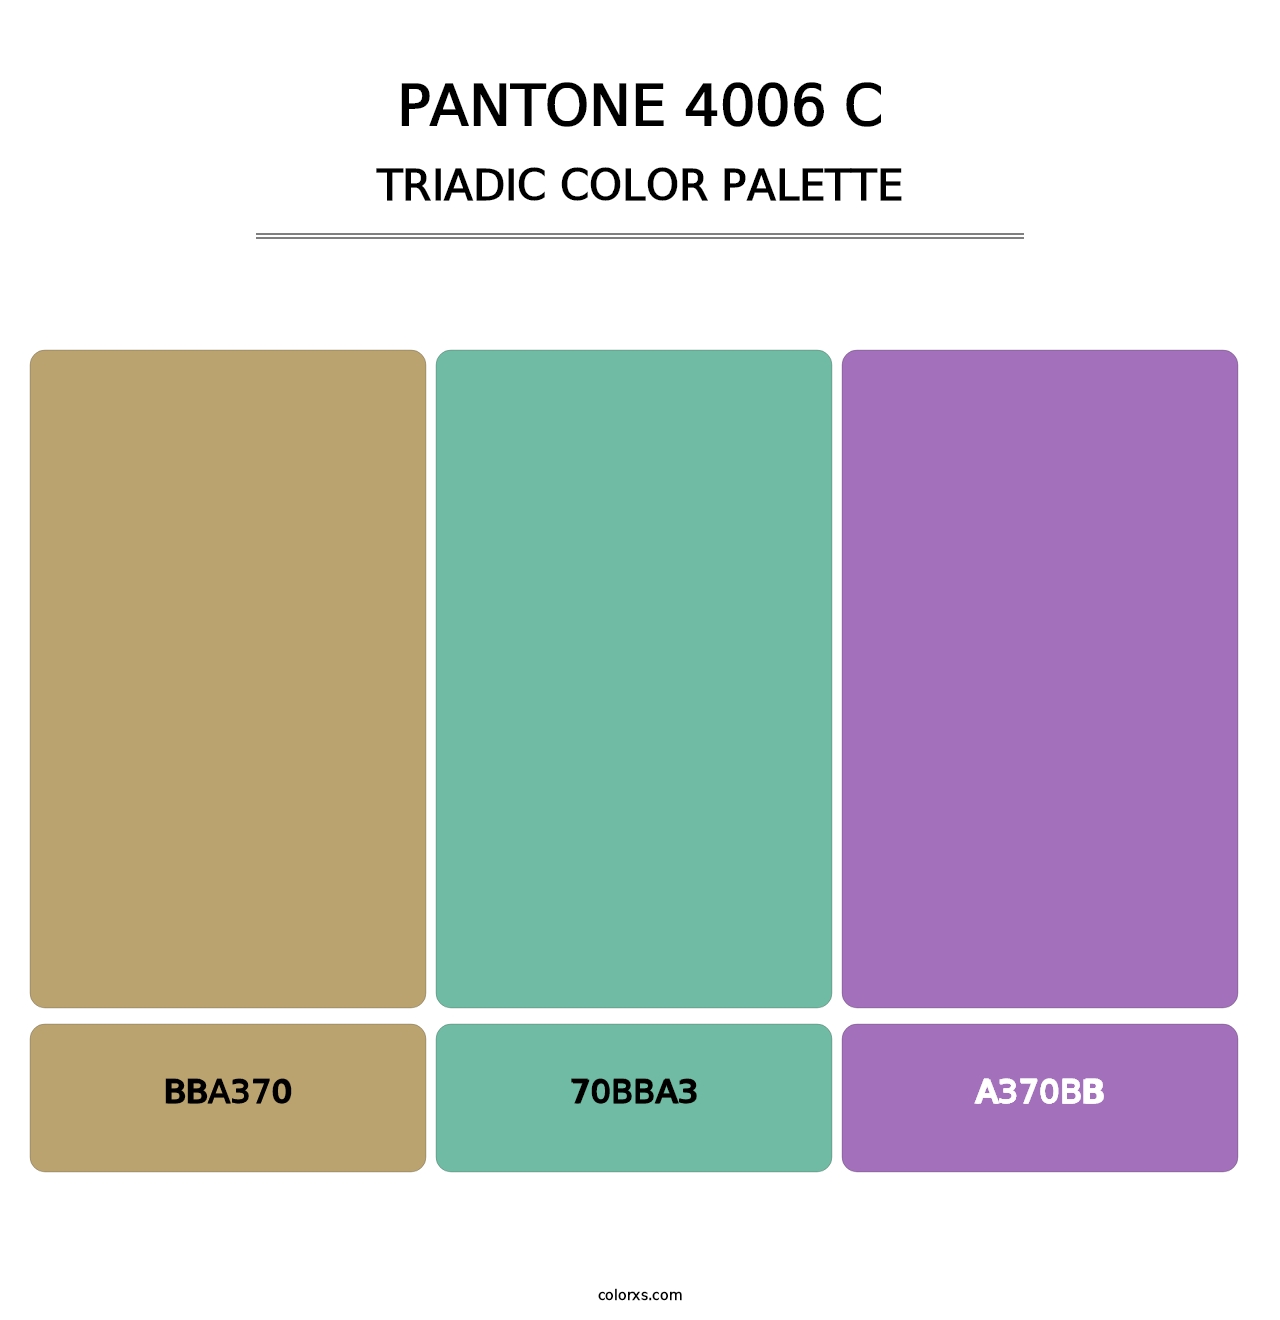 PANTONE 4006 C - Triadic Color Palette